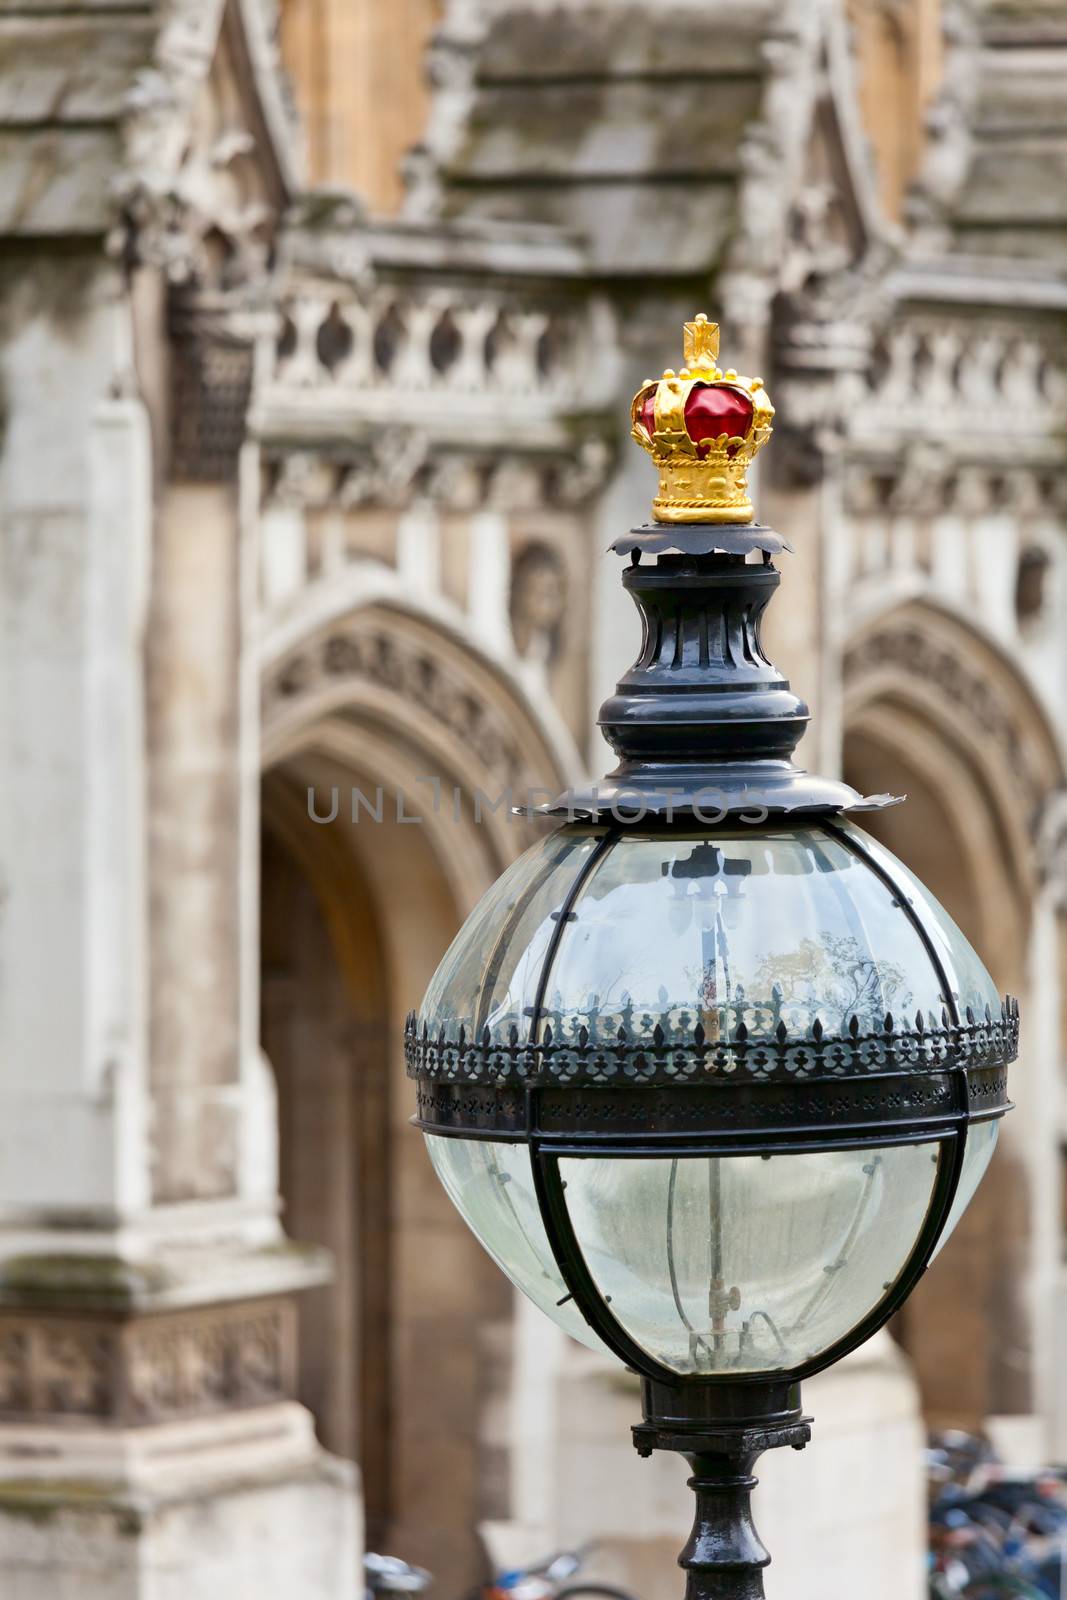 Street lamp on Westminster Bridge in London